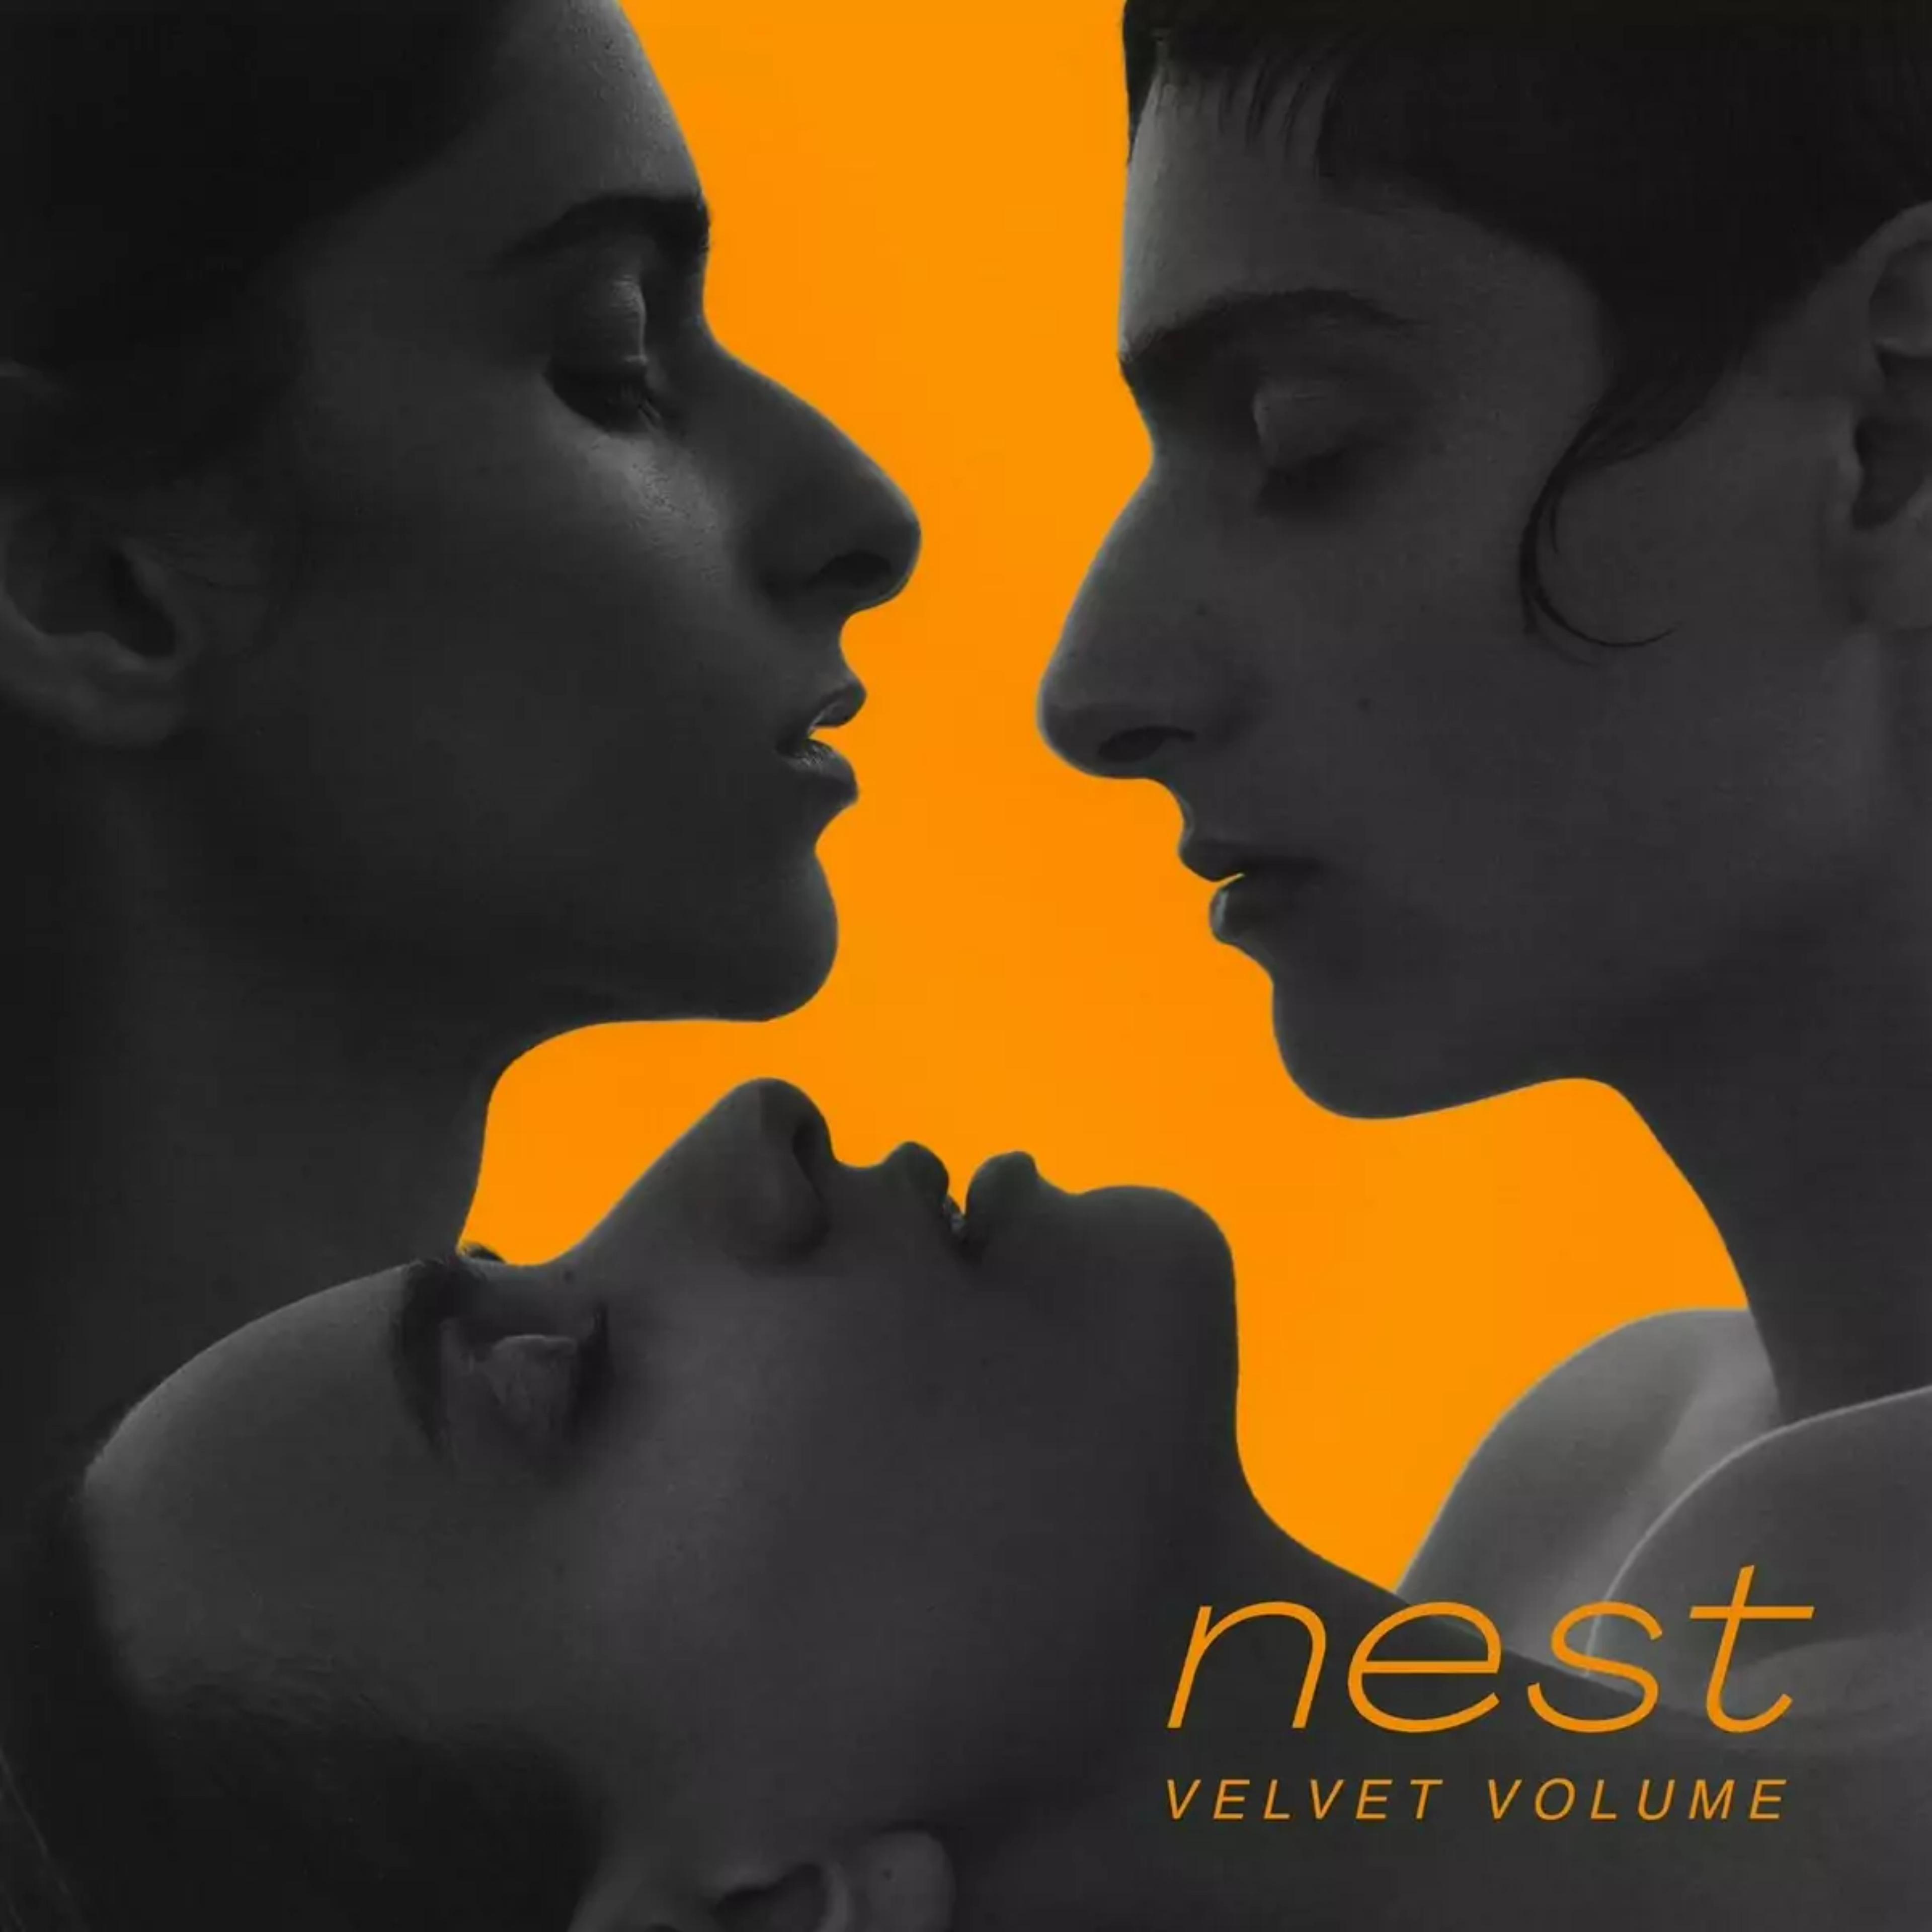 Artwork for Nest by Velvet Volume